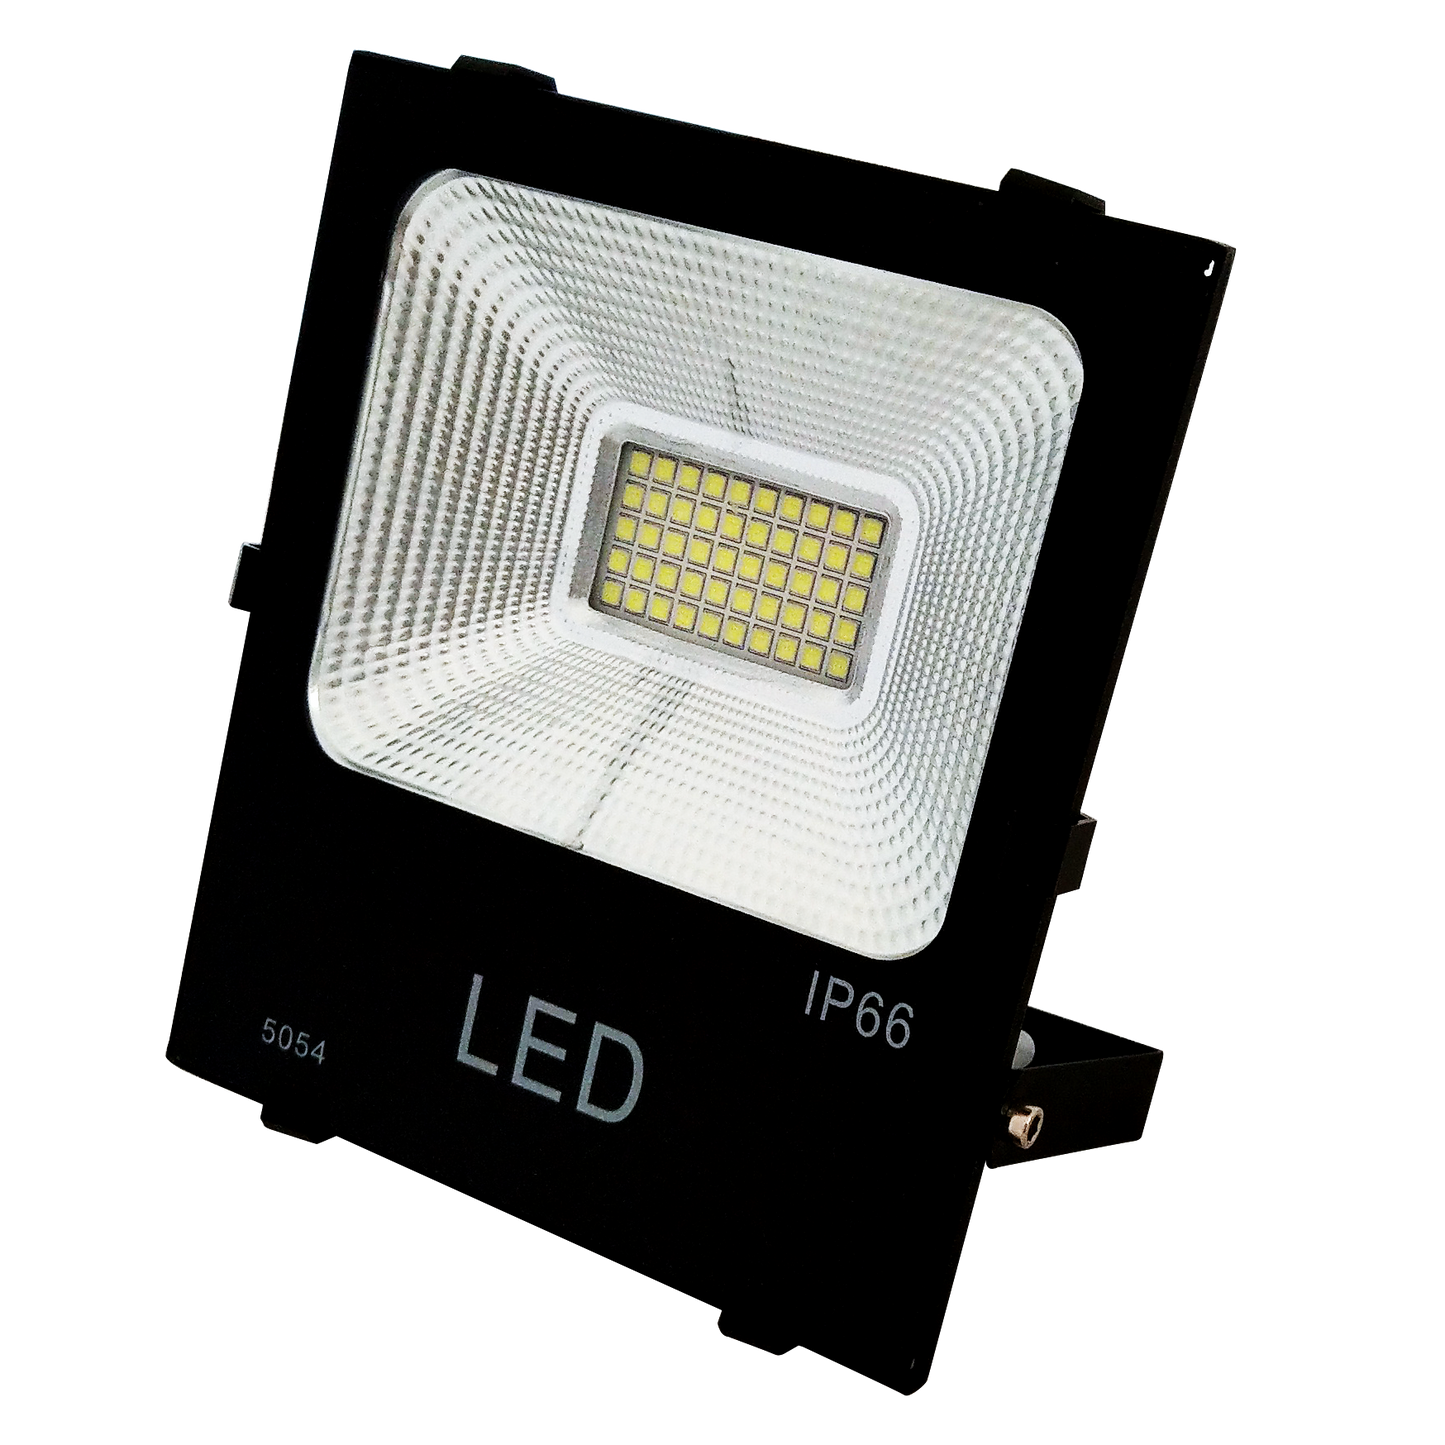 LED超薄型SMD 50W投光燈